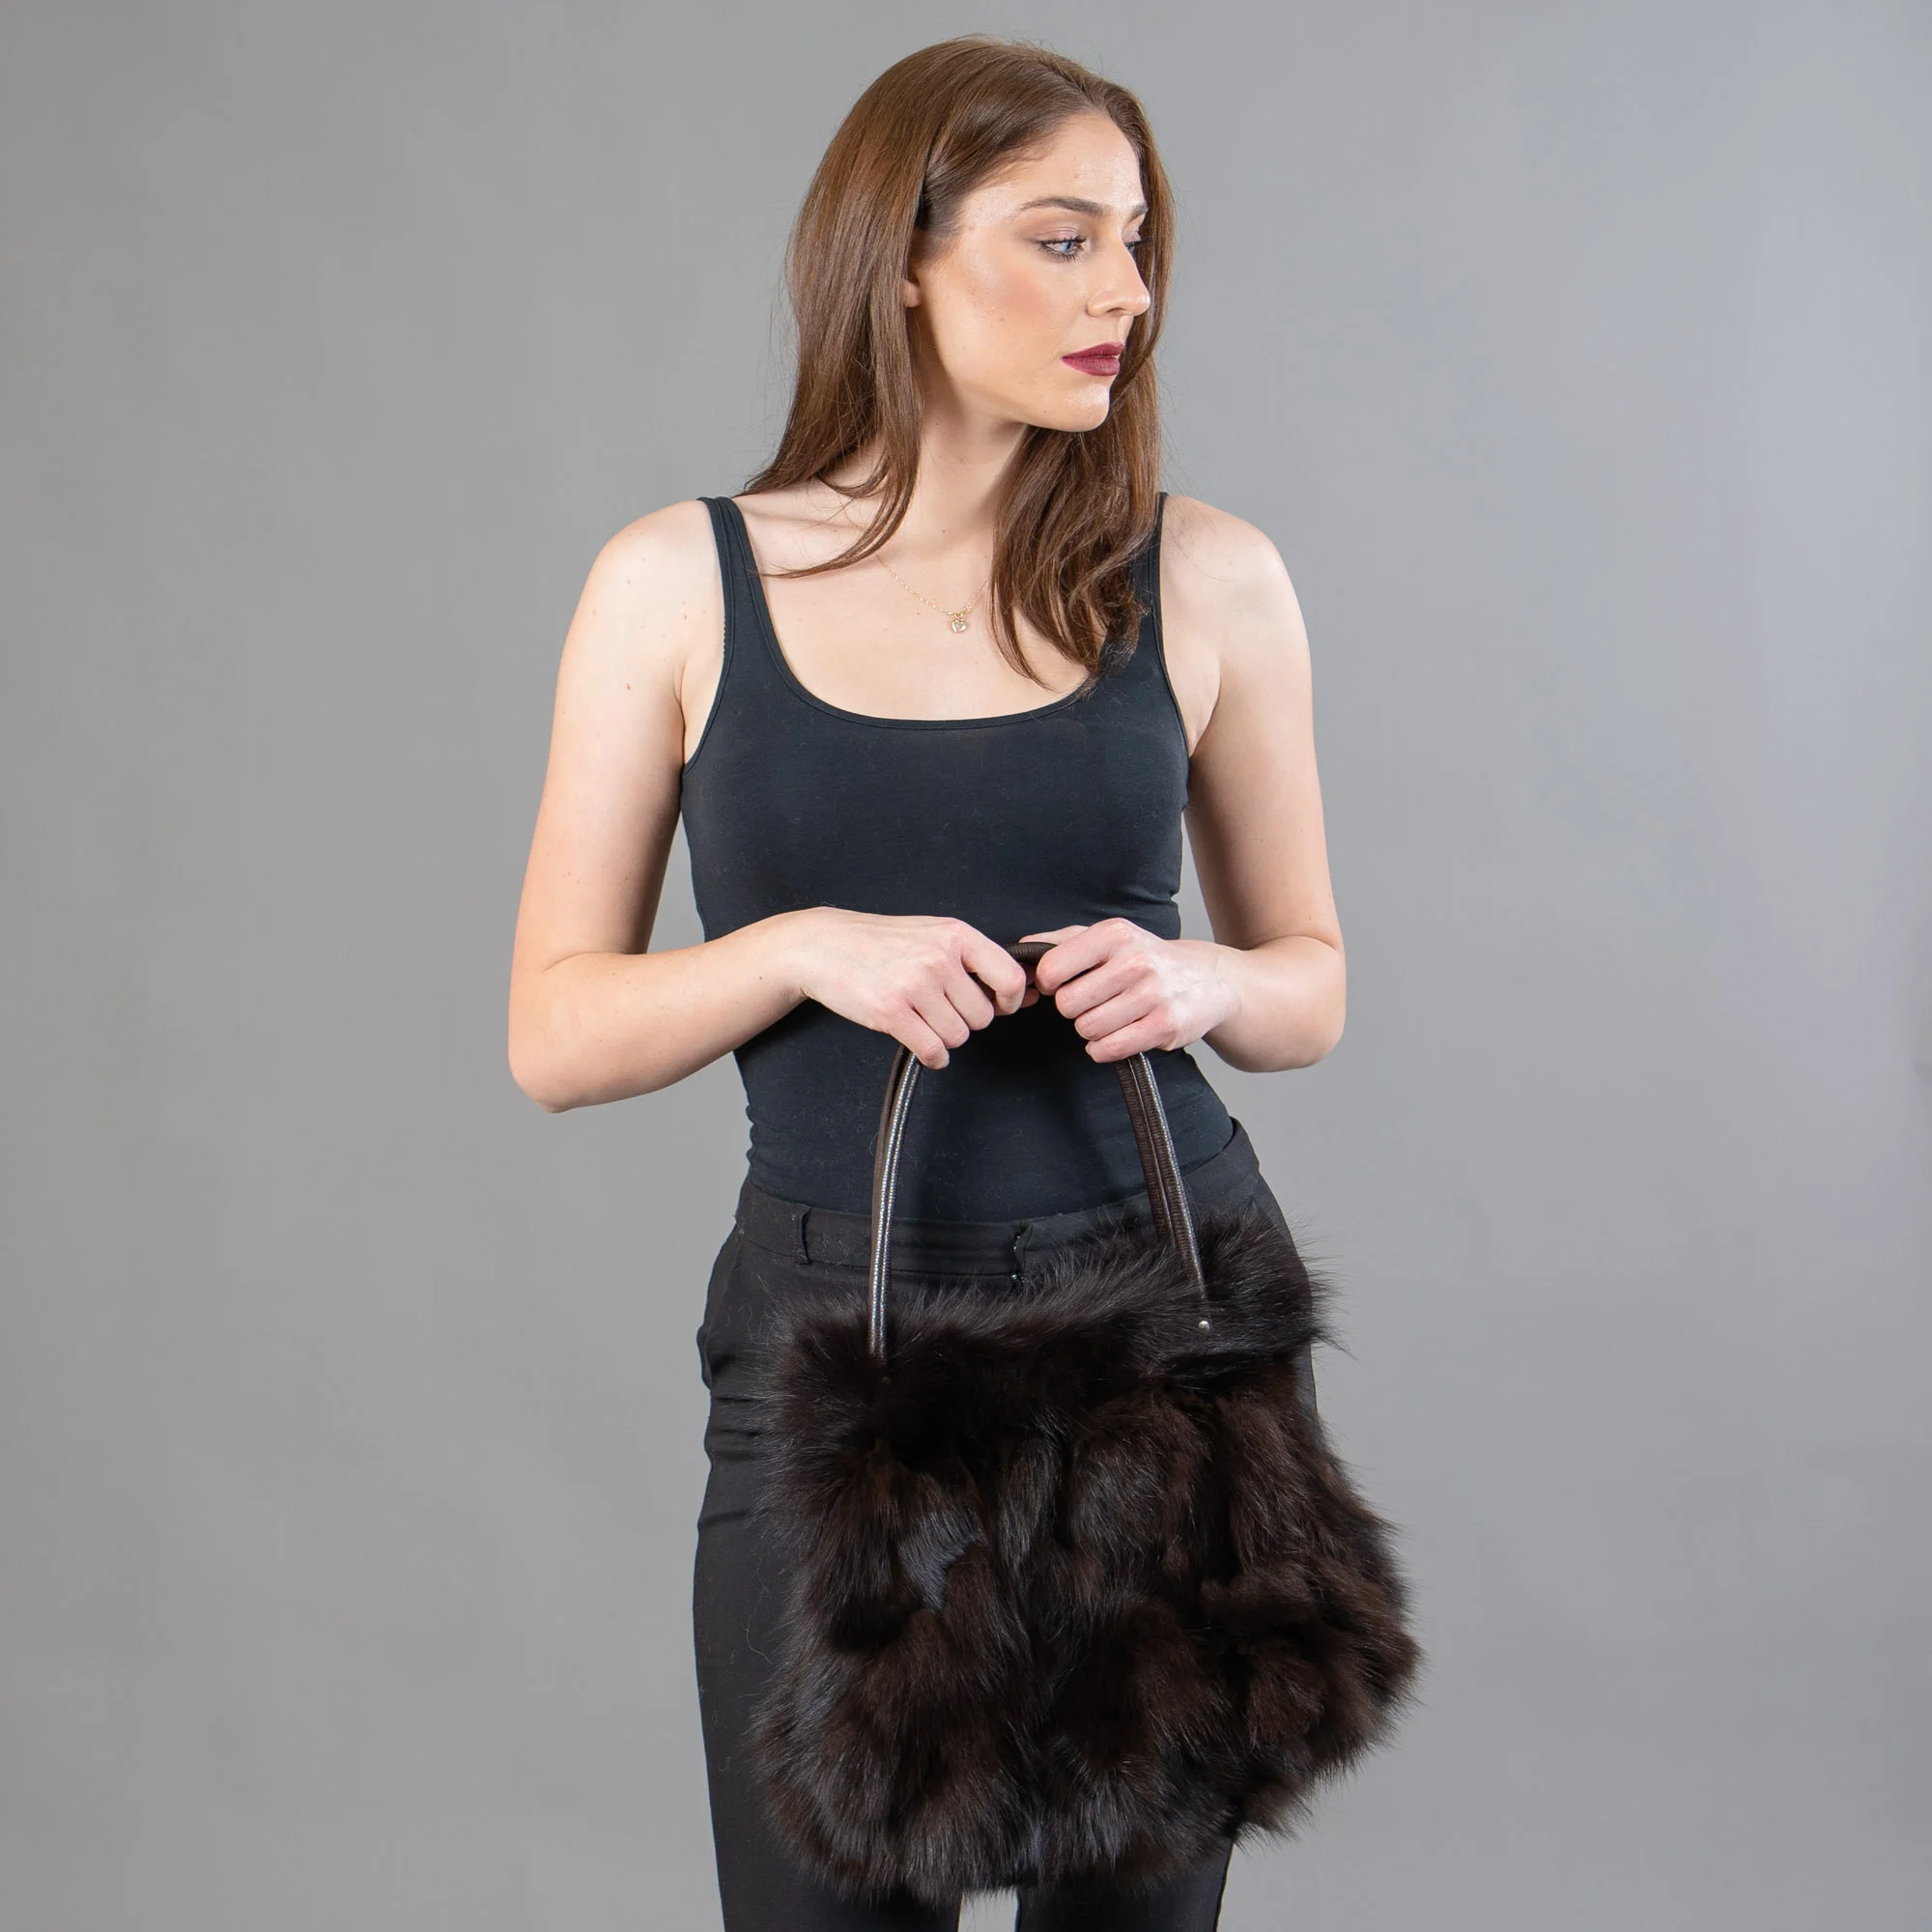 Fox fur handbag in brown color